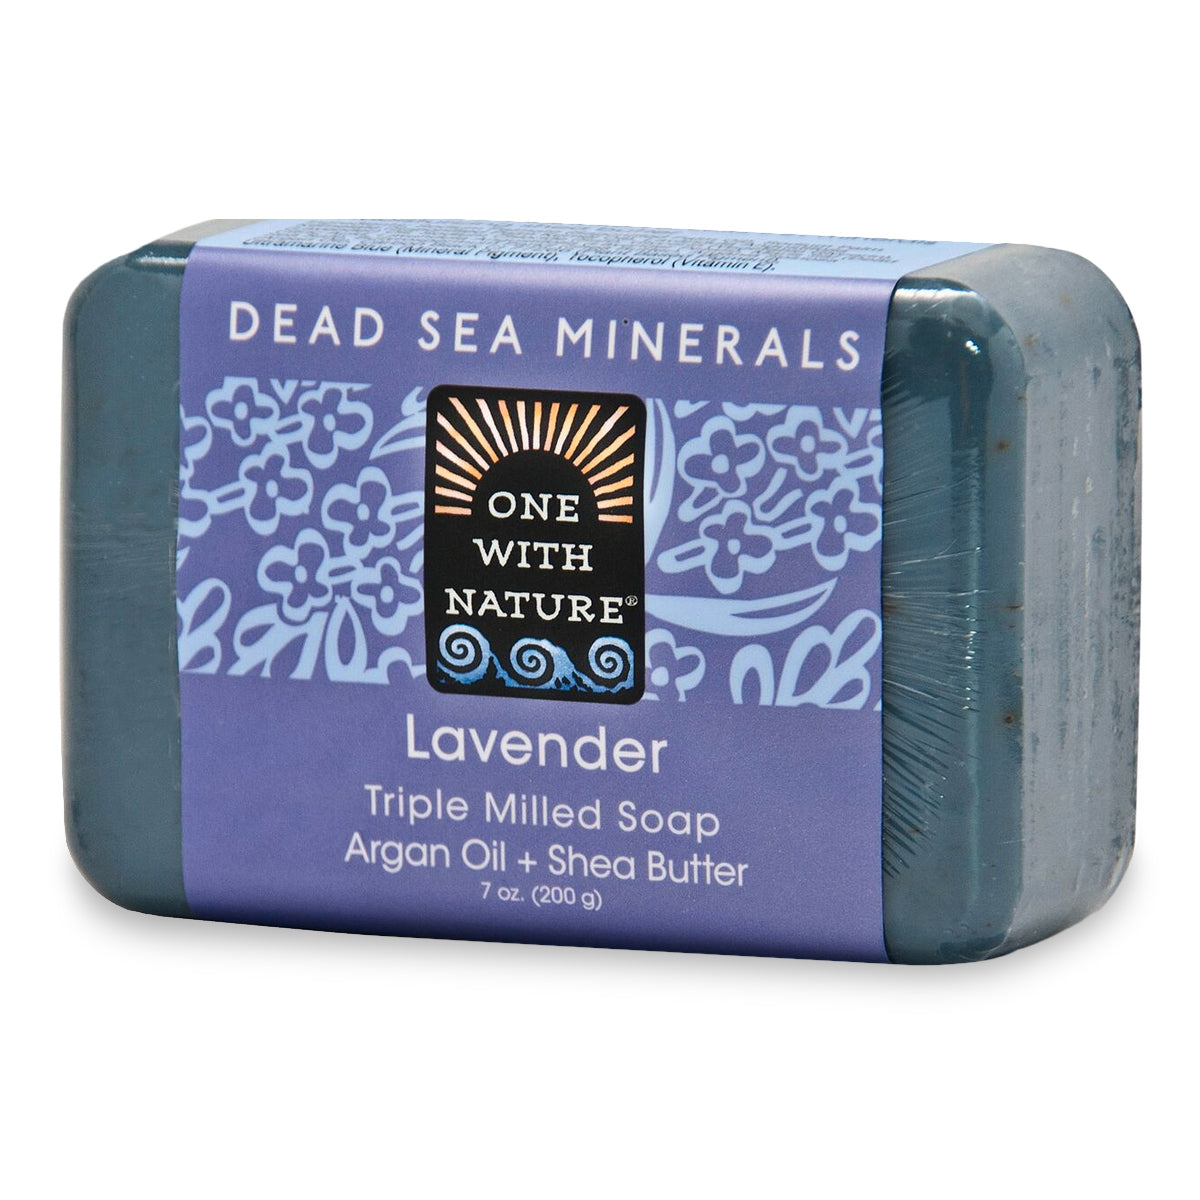 Primary image of Dead Sea Mineral Soap - Lavender